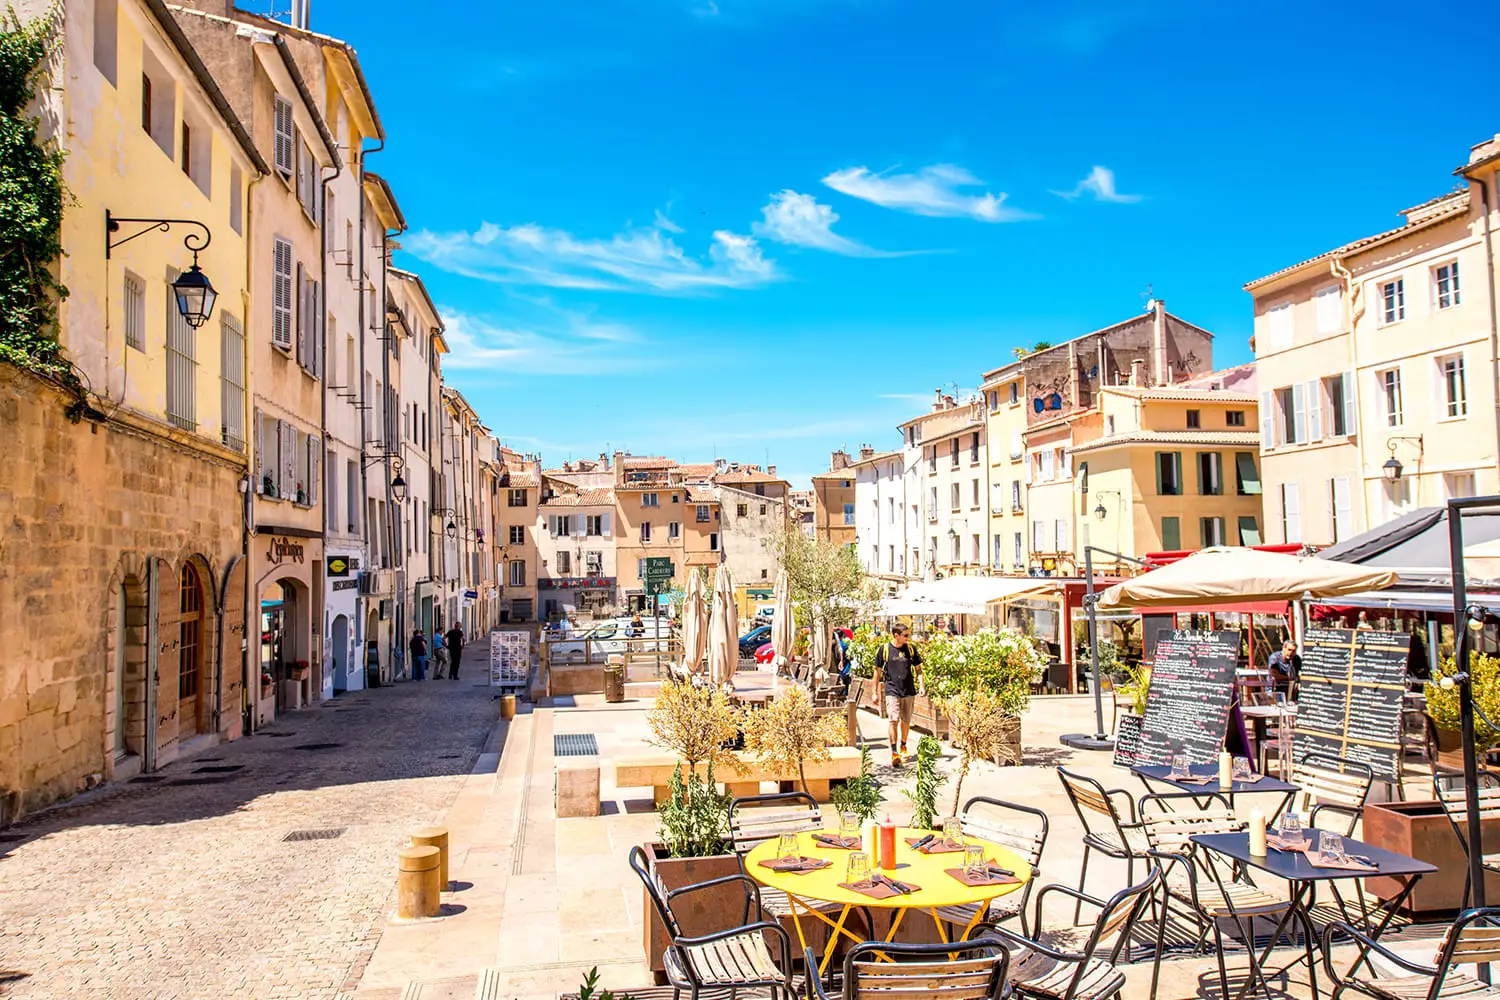 πλατεία ardeurs με καφέ και εστιατόρια στην παλιά πόλη της πόλης Aix-en-Provence στη νότια Γαλλία.